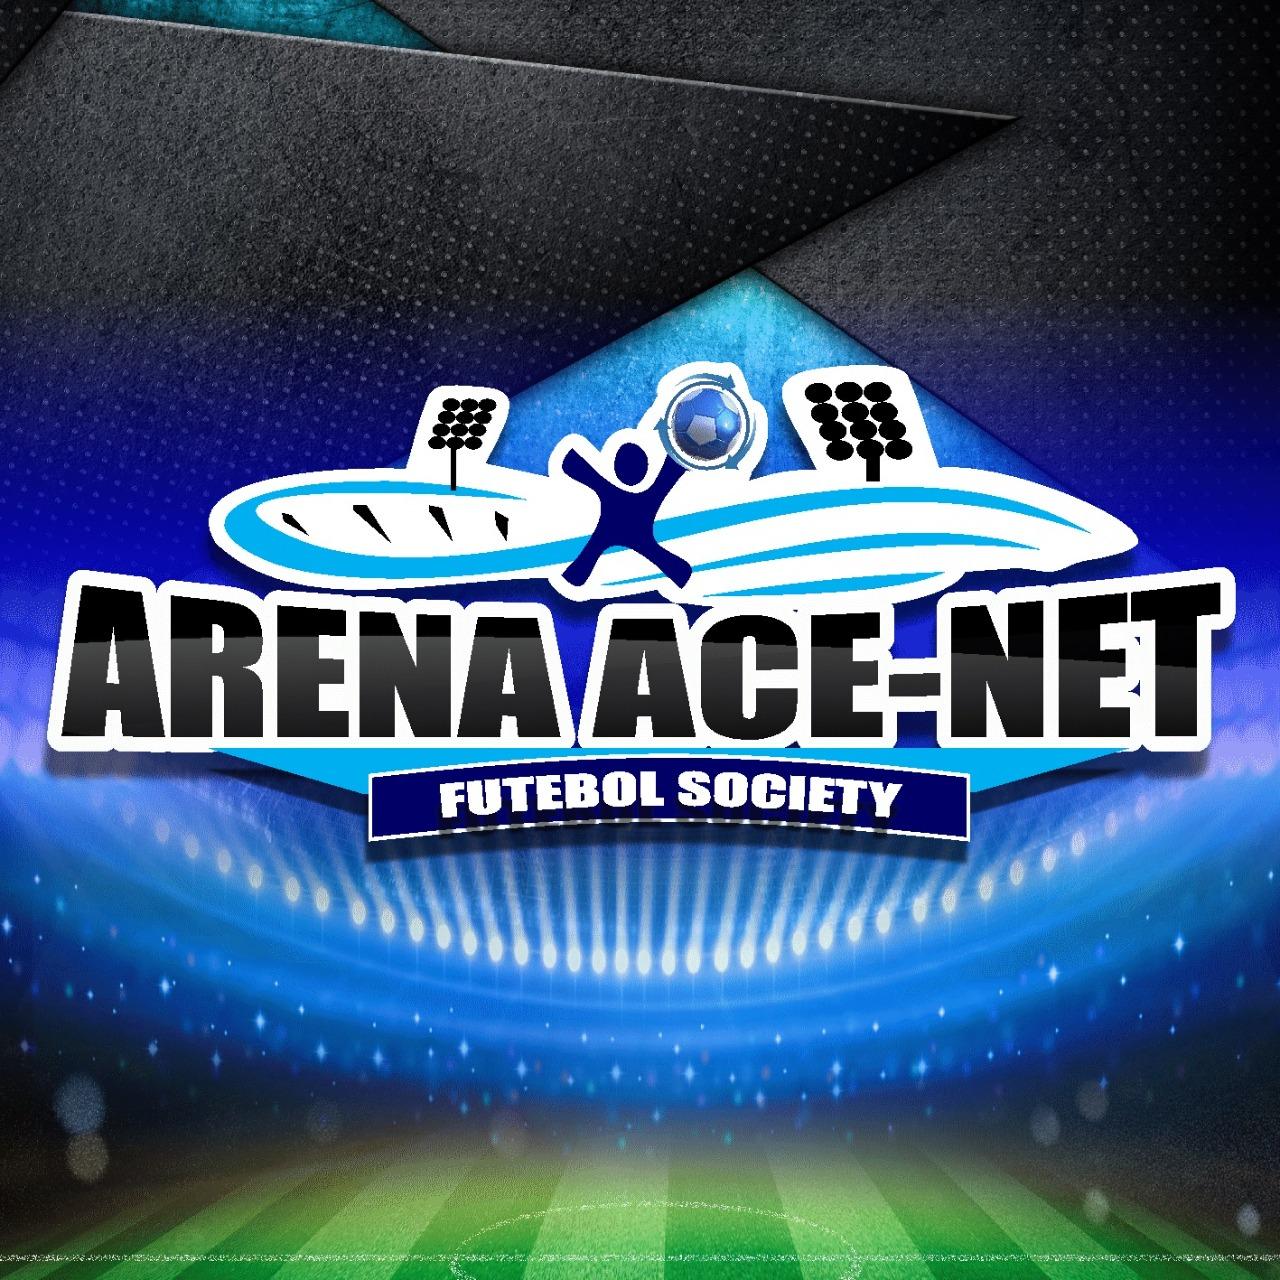 Arena Acenet